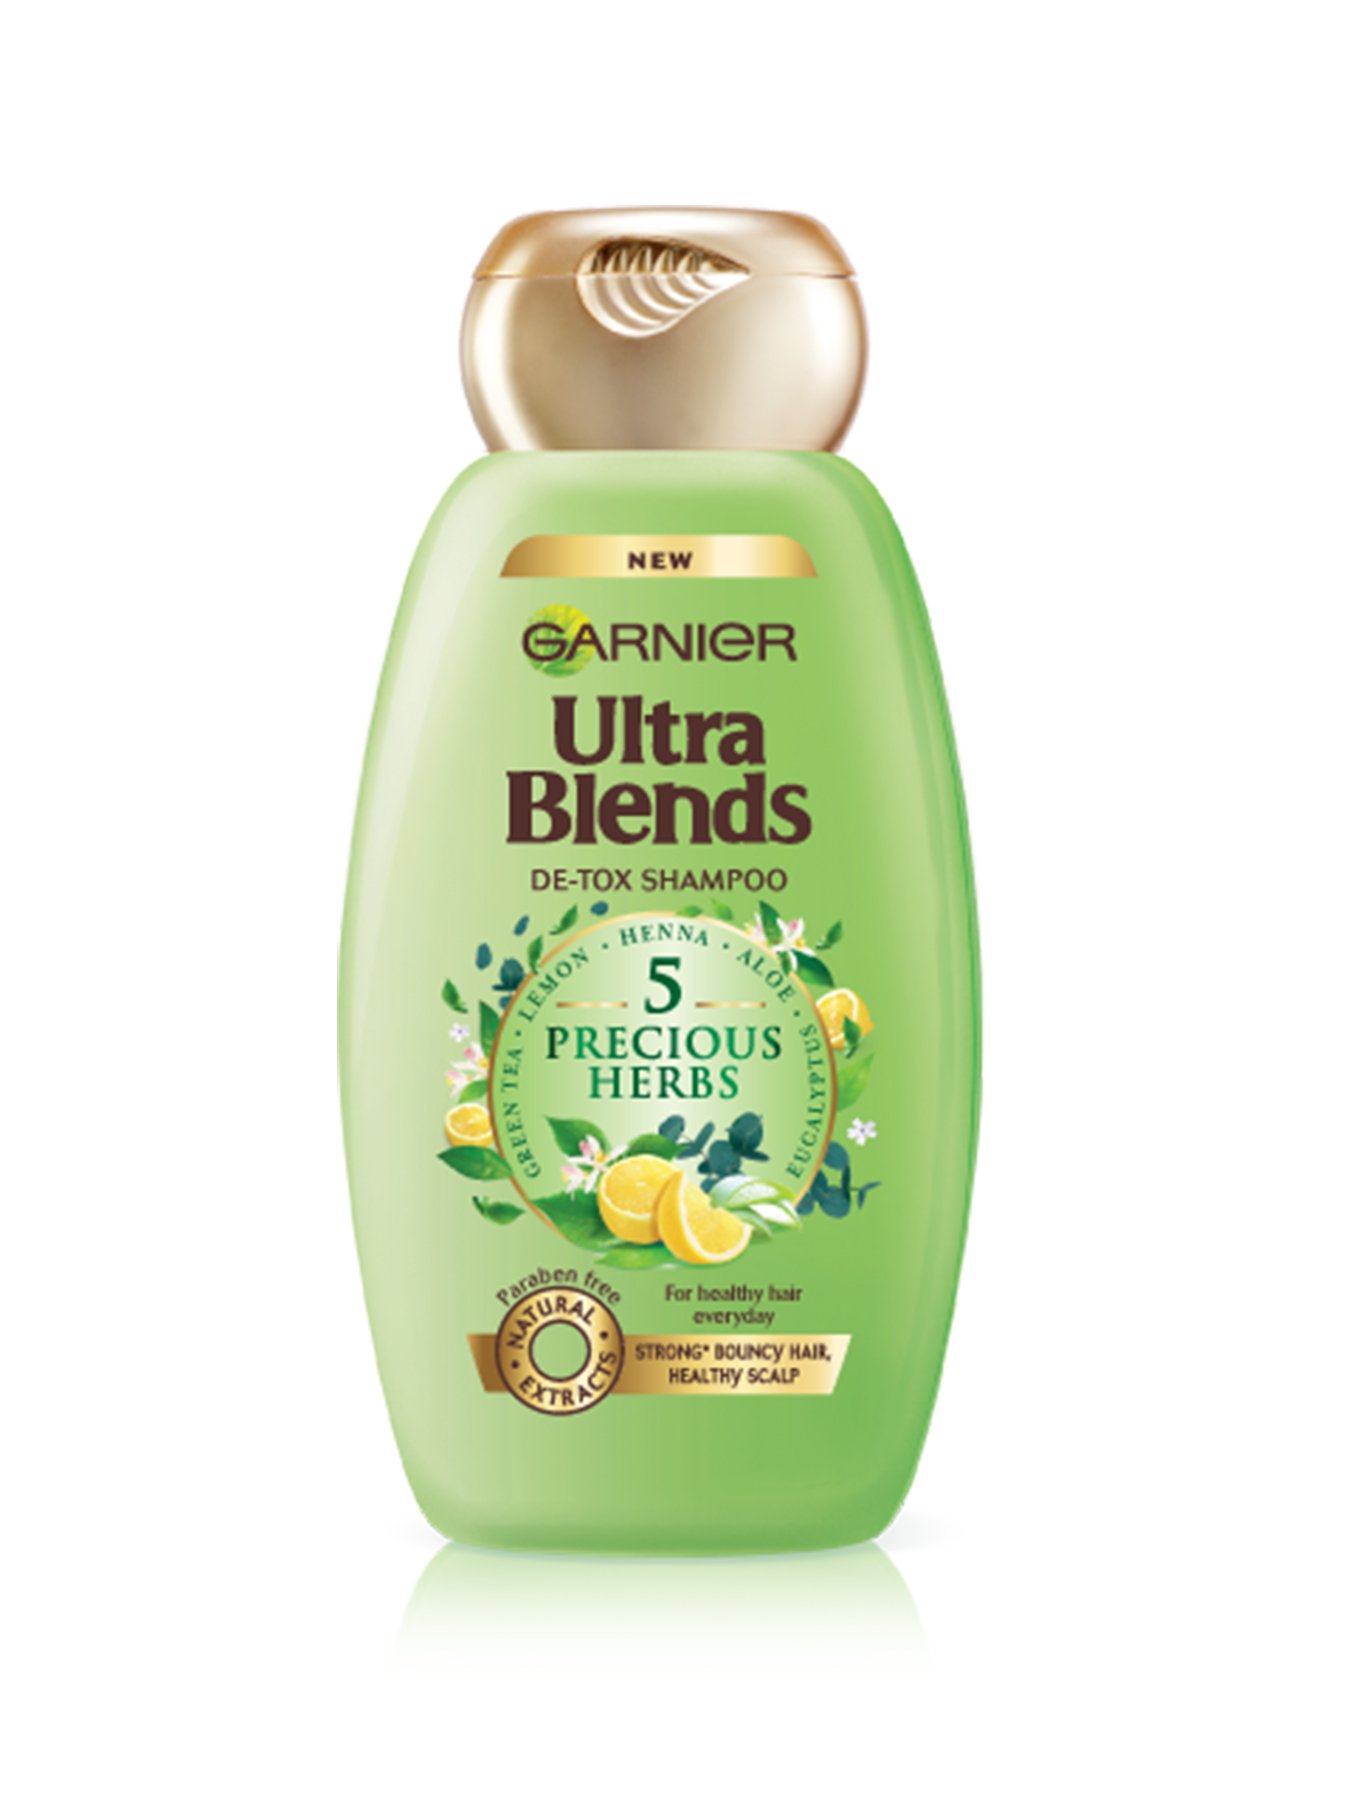 Garnier Ultra Blends 5 Precious herbs 75ml Shampoo